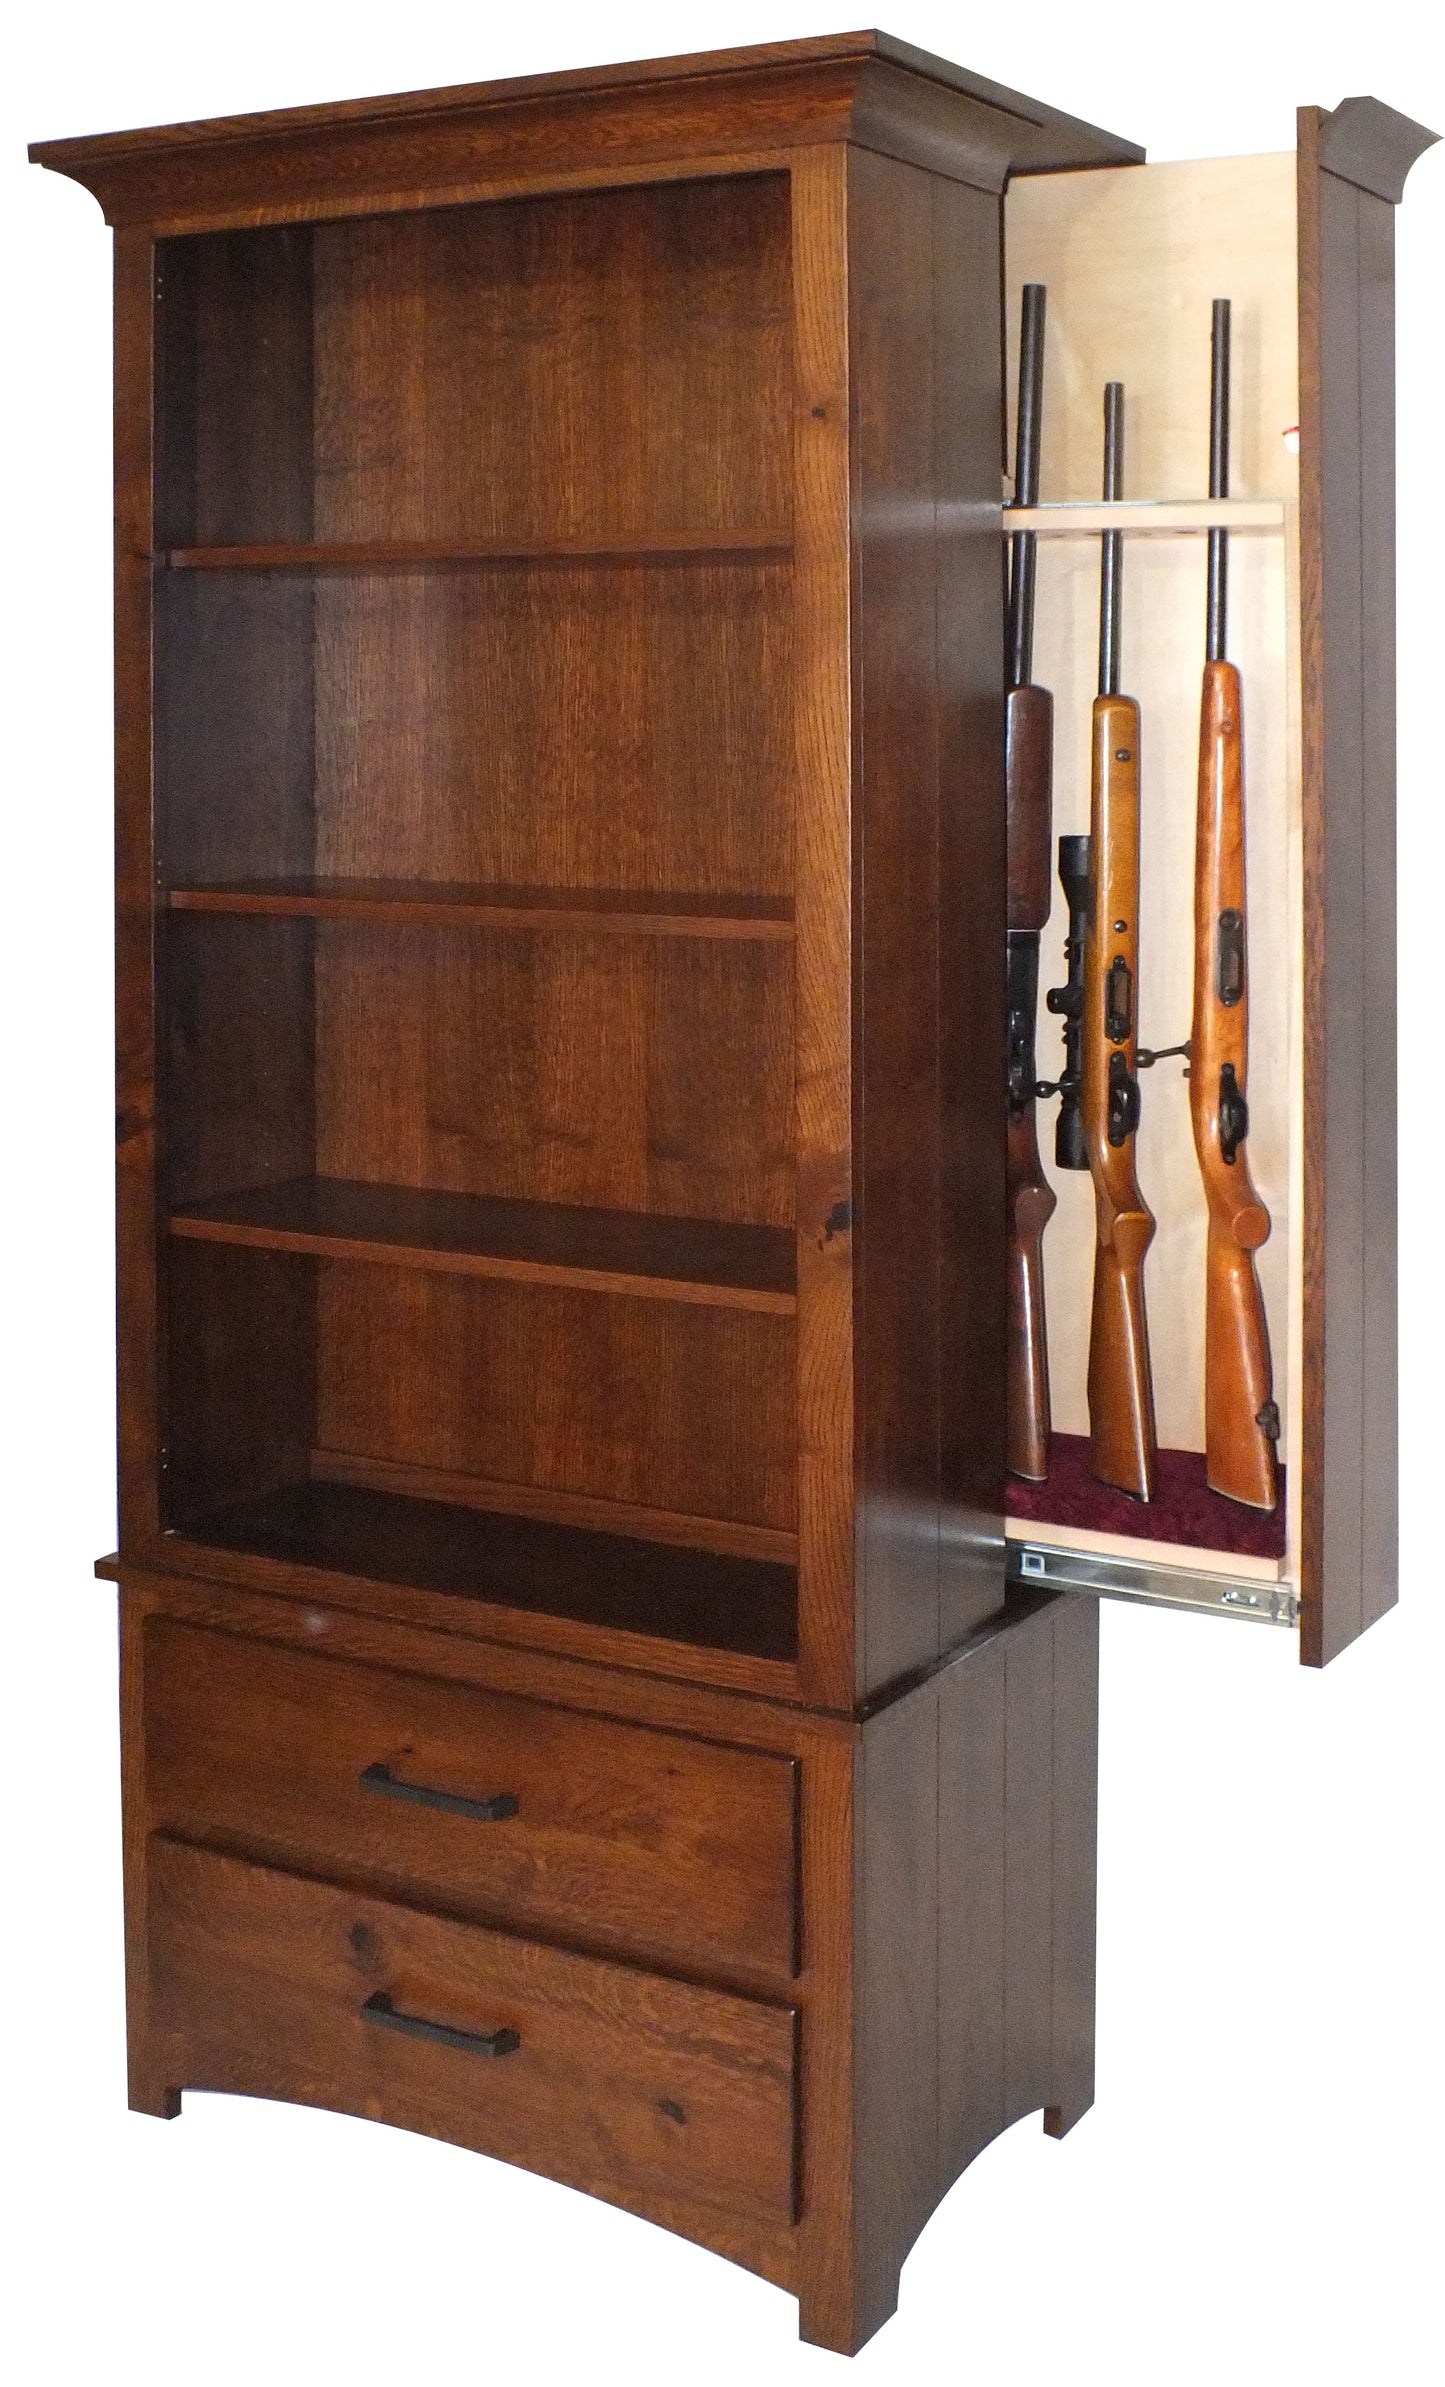 7 Gun Mission Bookcase with Hidden Gun Cabinet